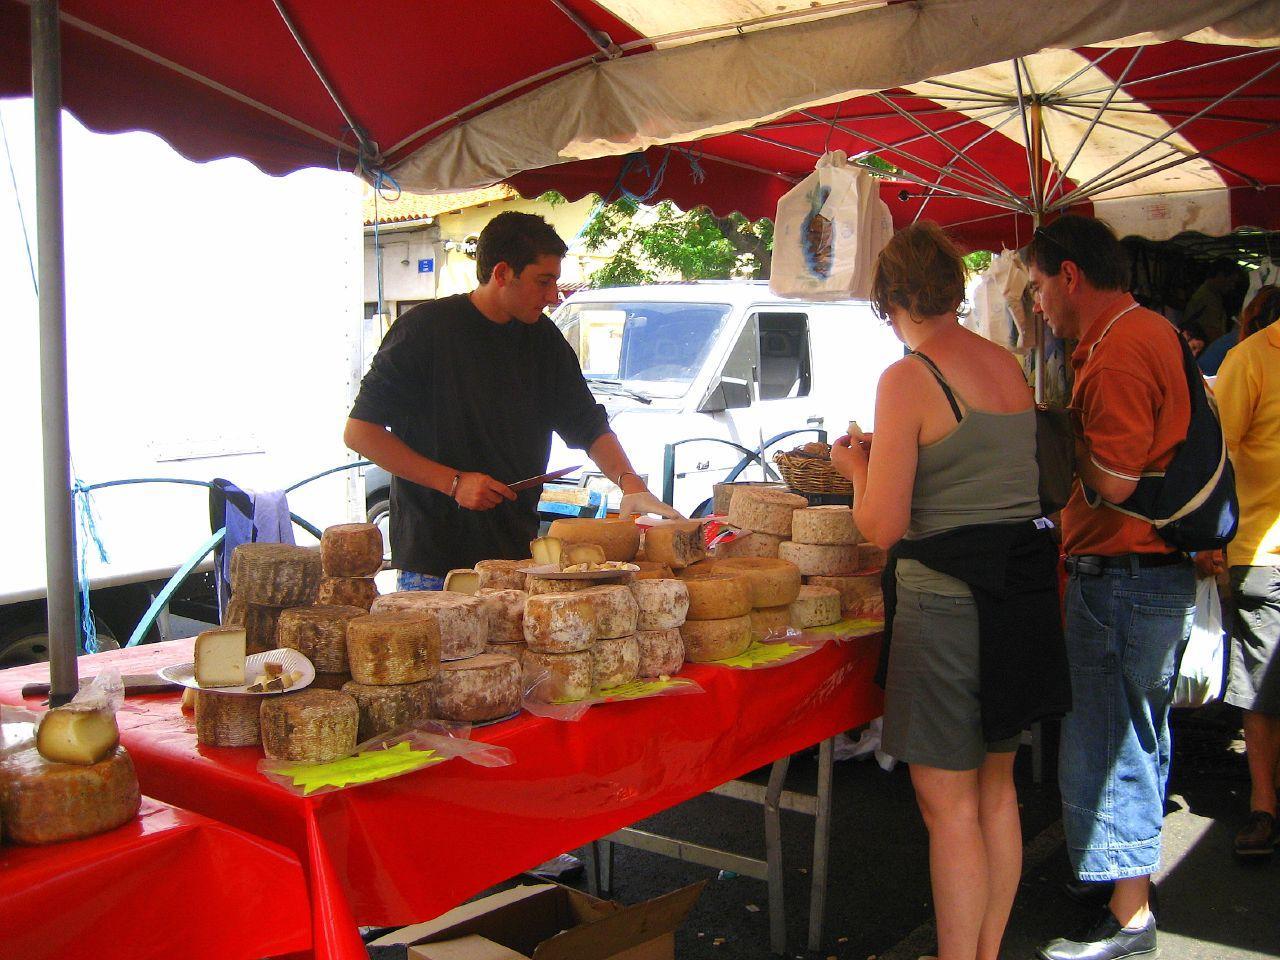 Le marché d'Ajaccio